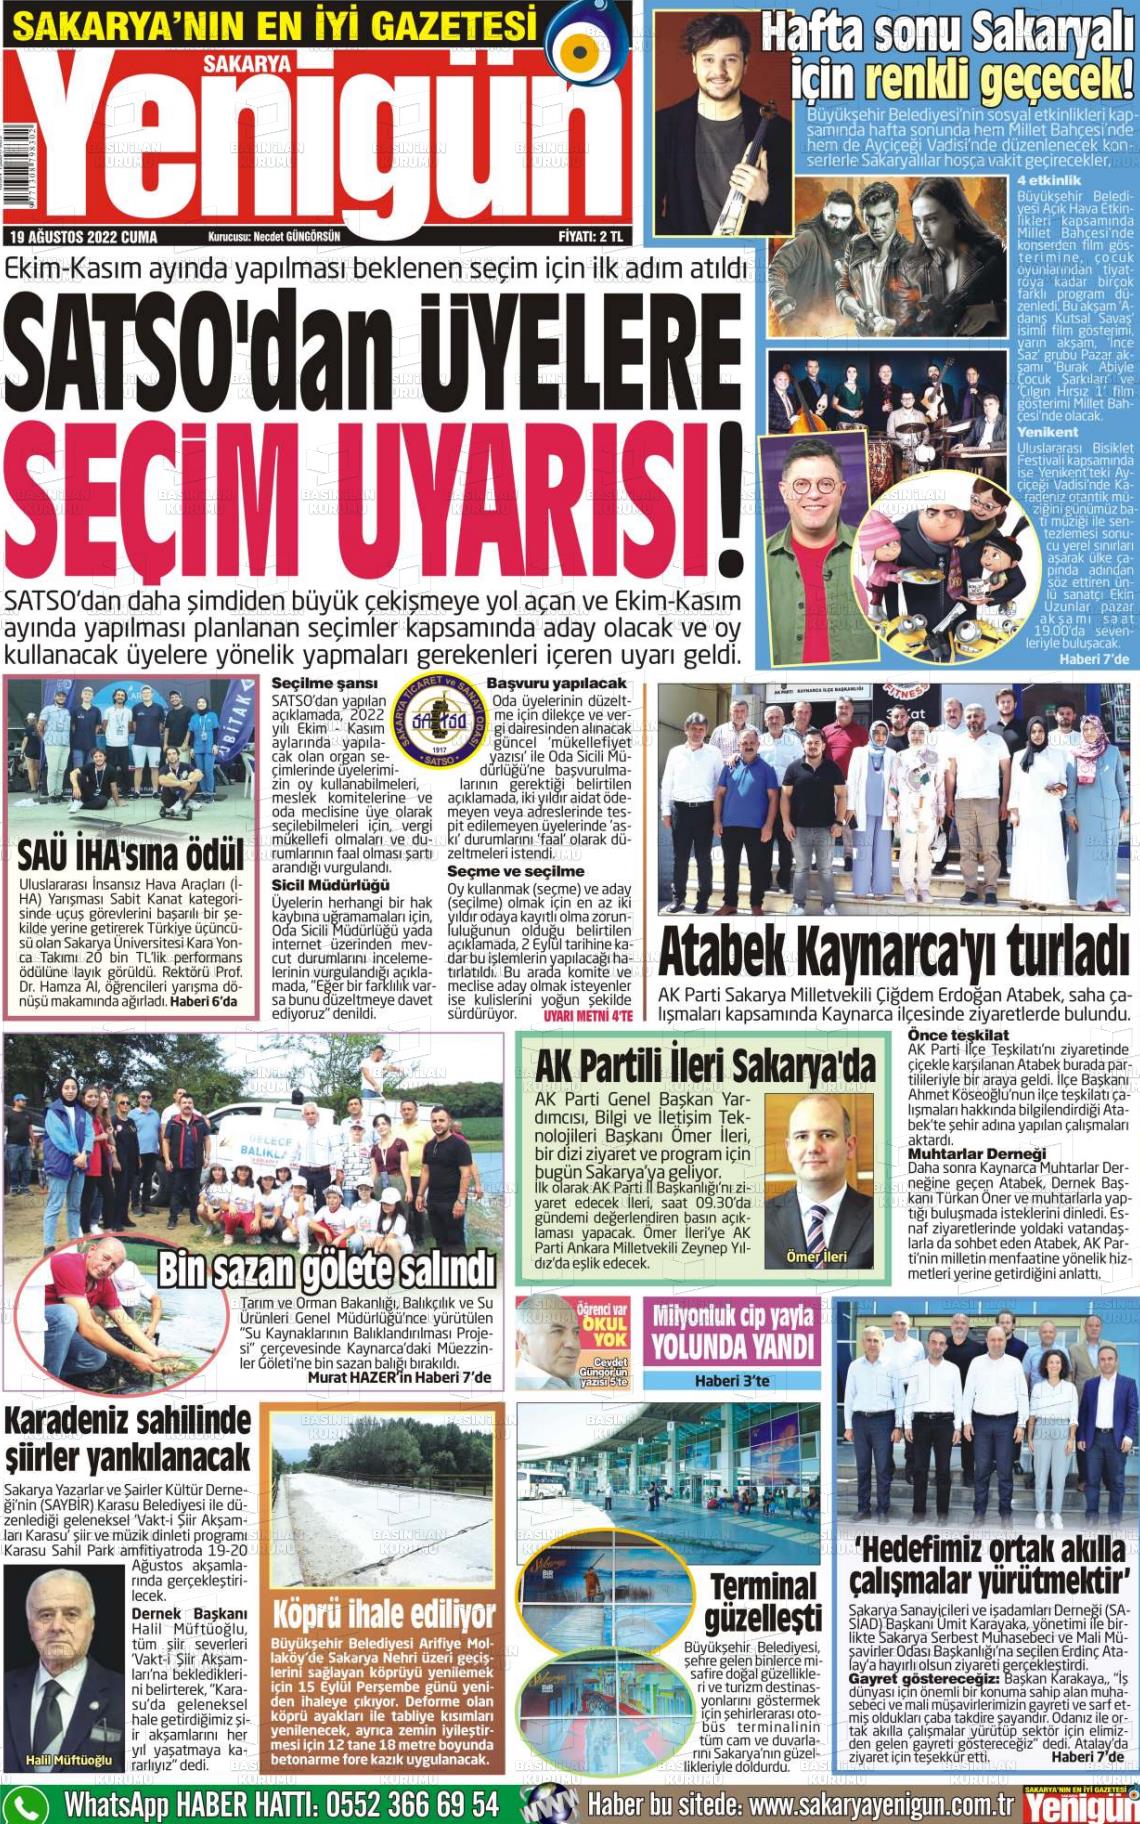 19 Ağustos 2022 Sakarya Yenigün Gazete Manşeti